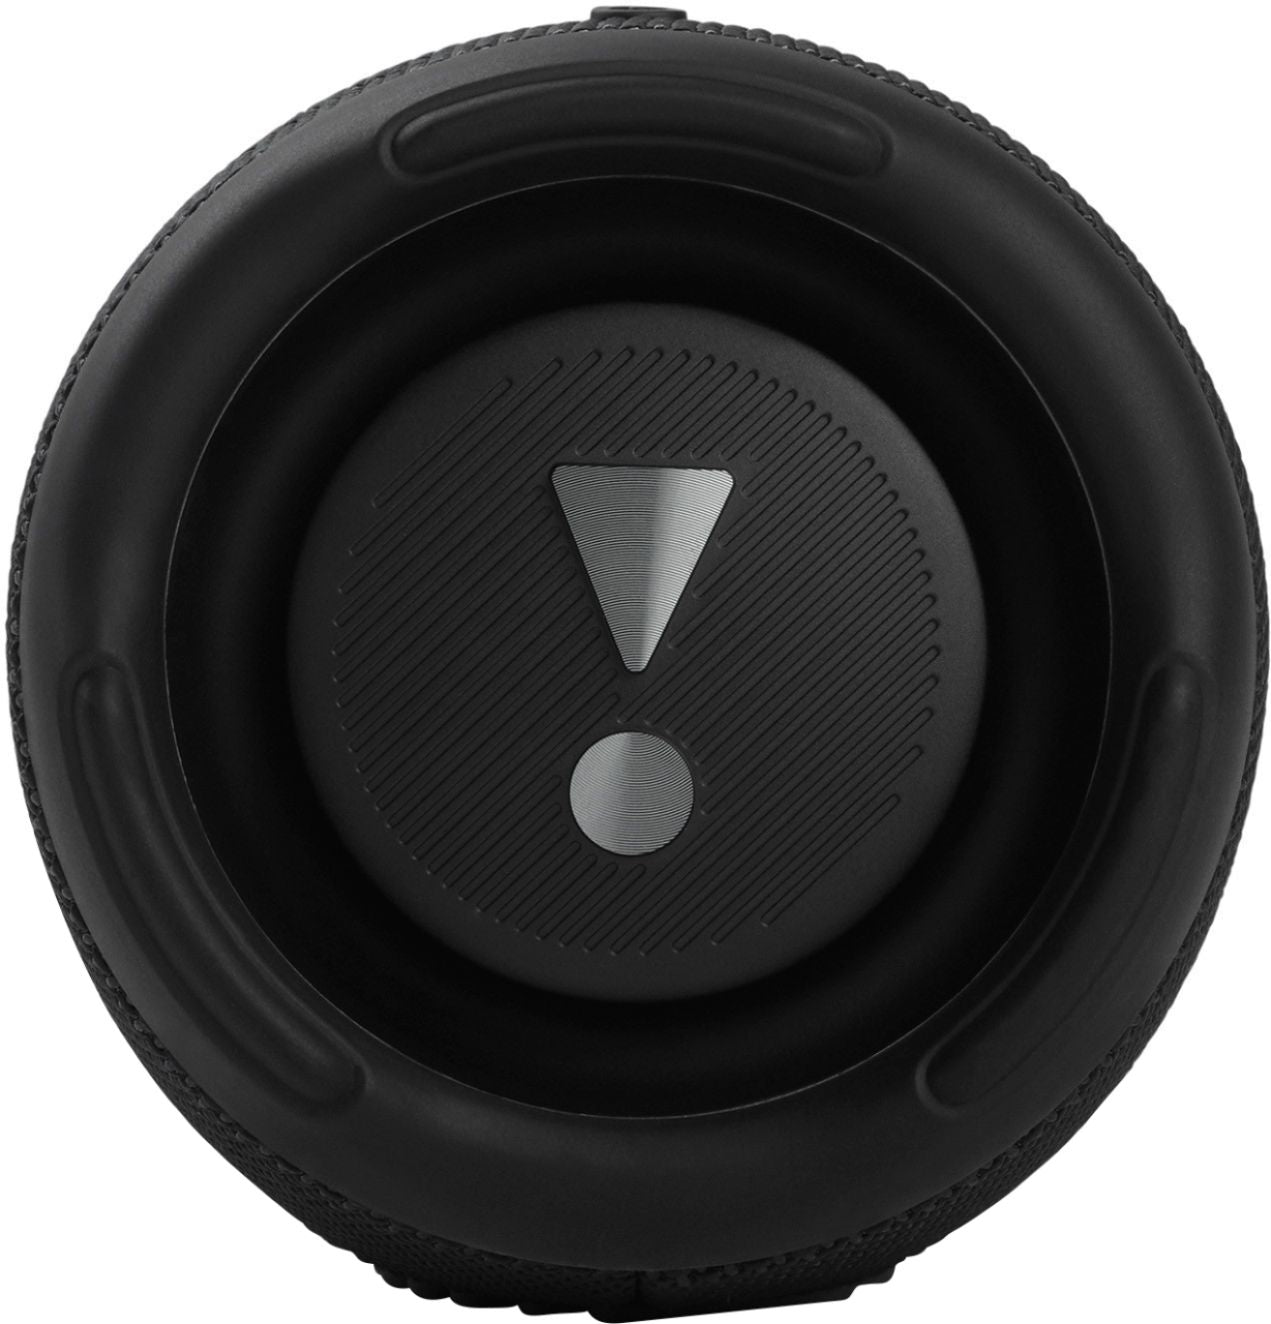 JBL - CHARGE5 Portable Waterproof Speaker with Powerbank - Black